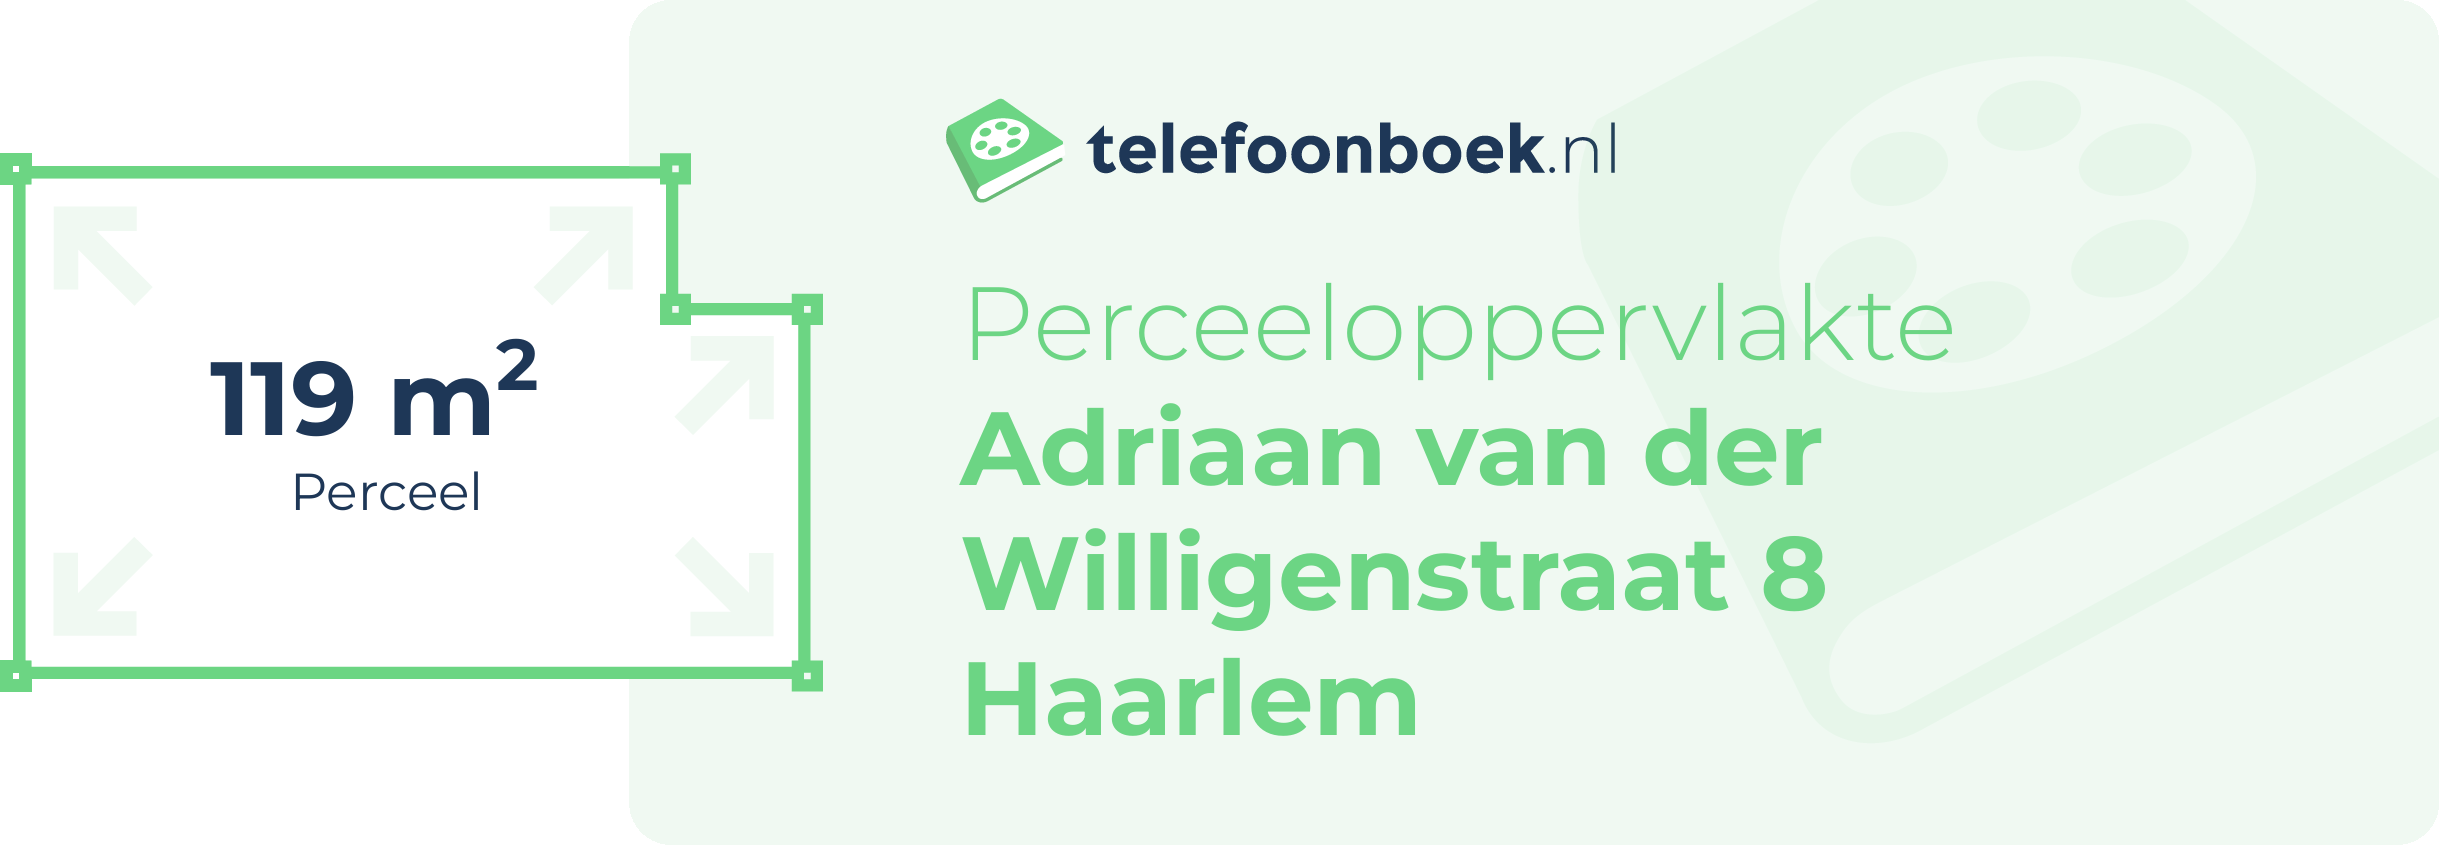 Perceeloppervlakte Adriaan Van Der Willigenstraat 8 Haarlem